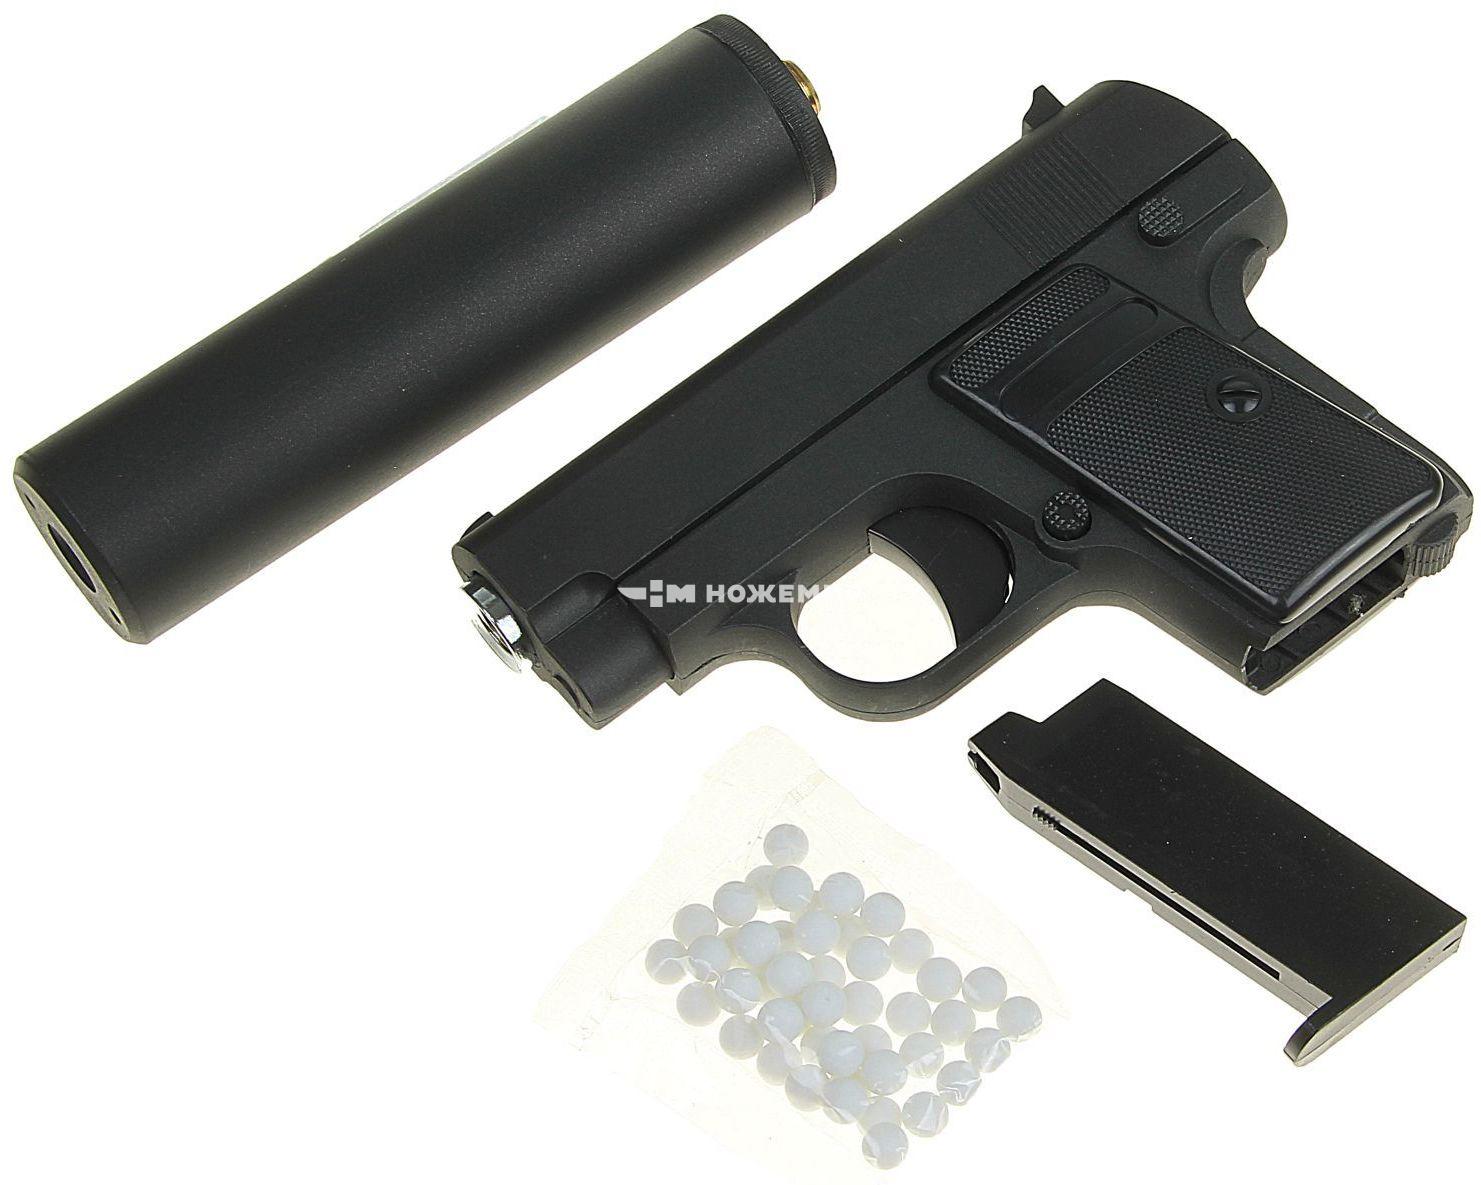 Страйкбольный пистолет софтэйр пружинный с глушителем Colt 25 mini Galaxy G9A